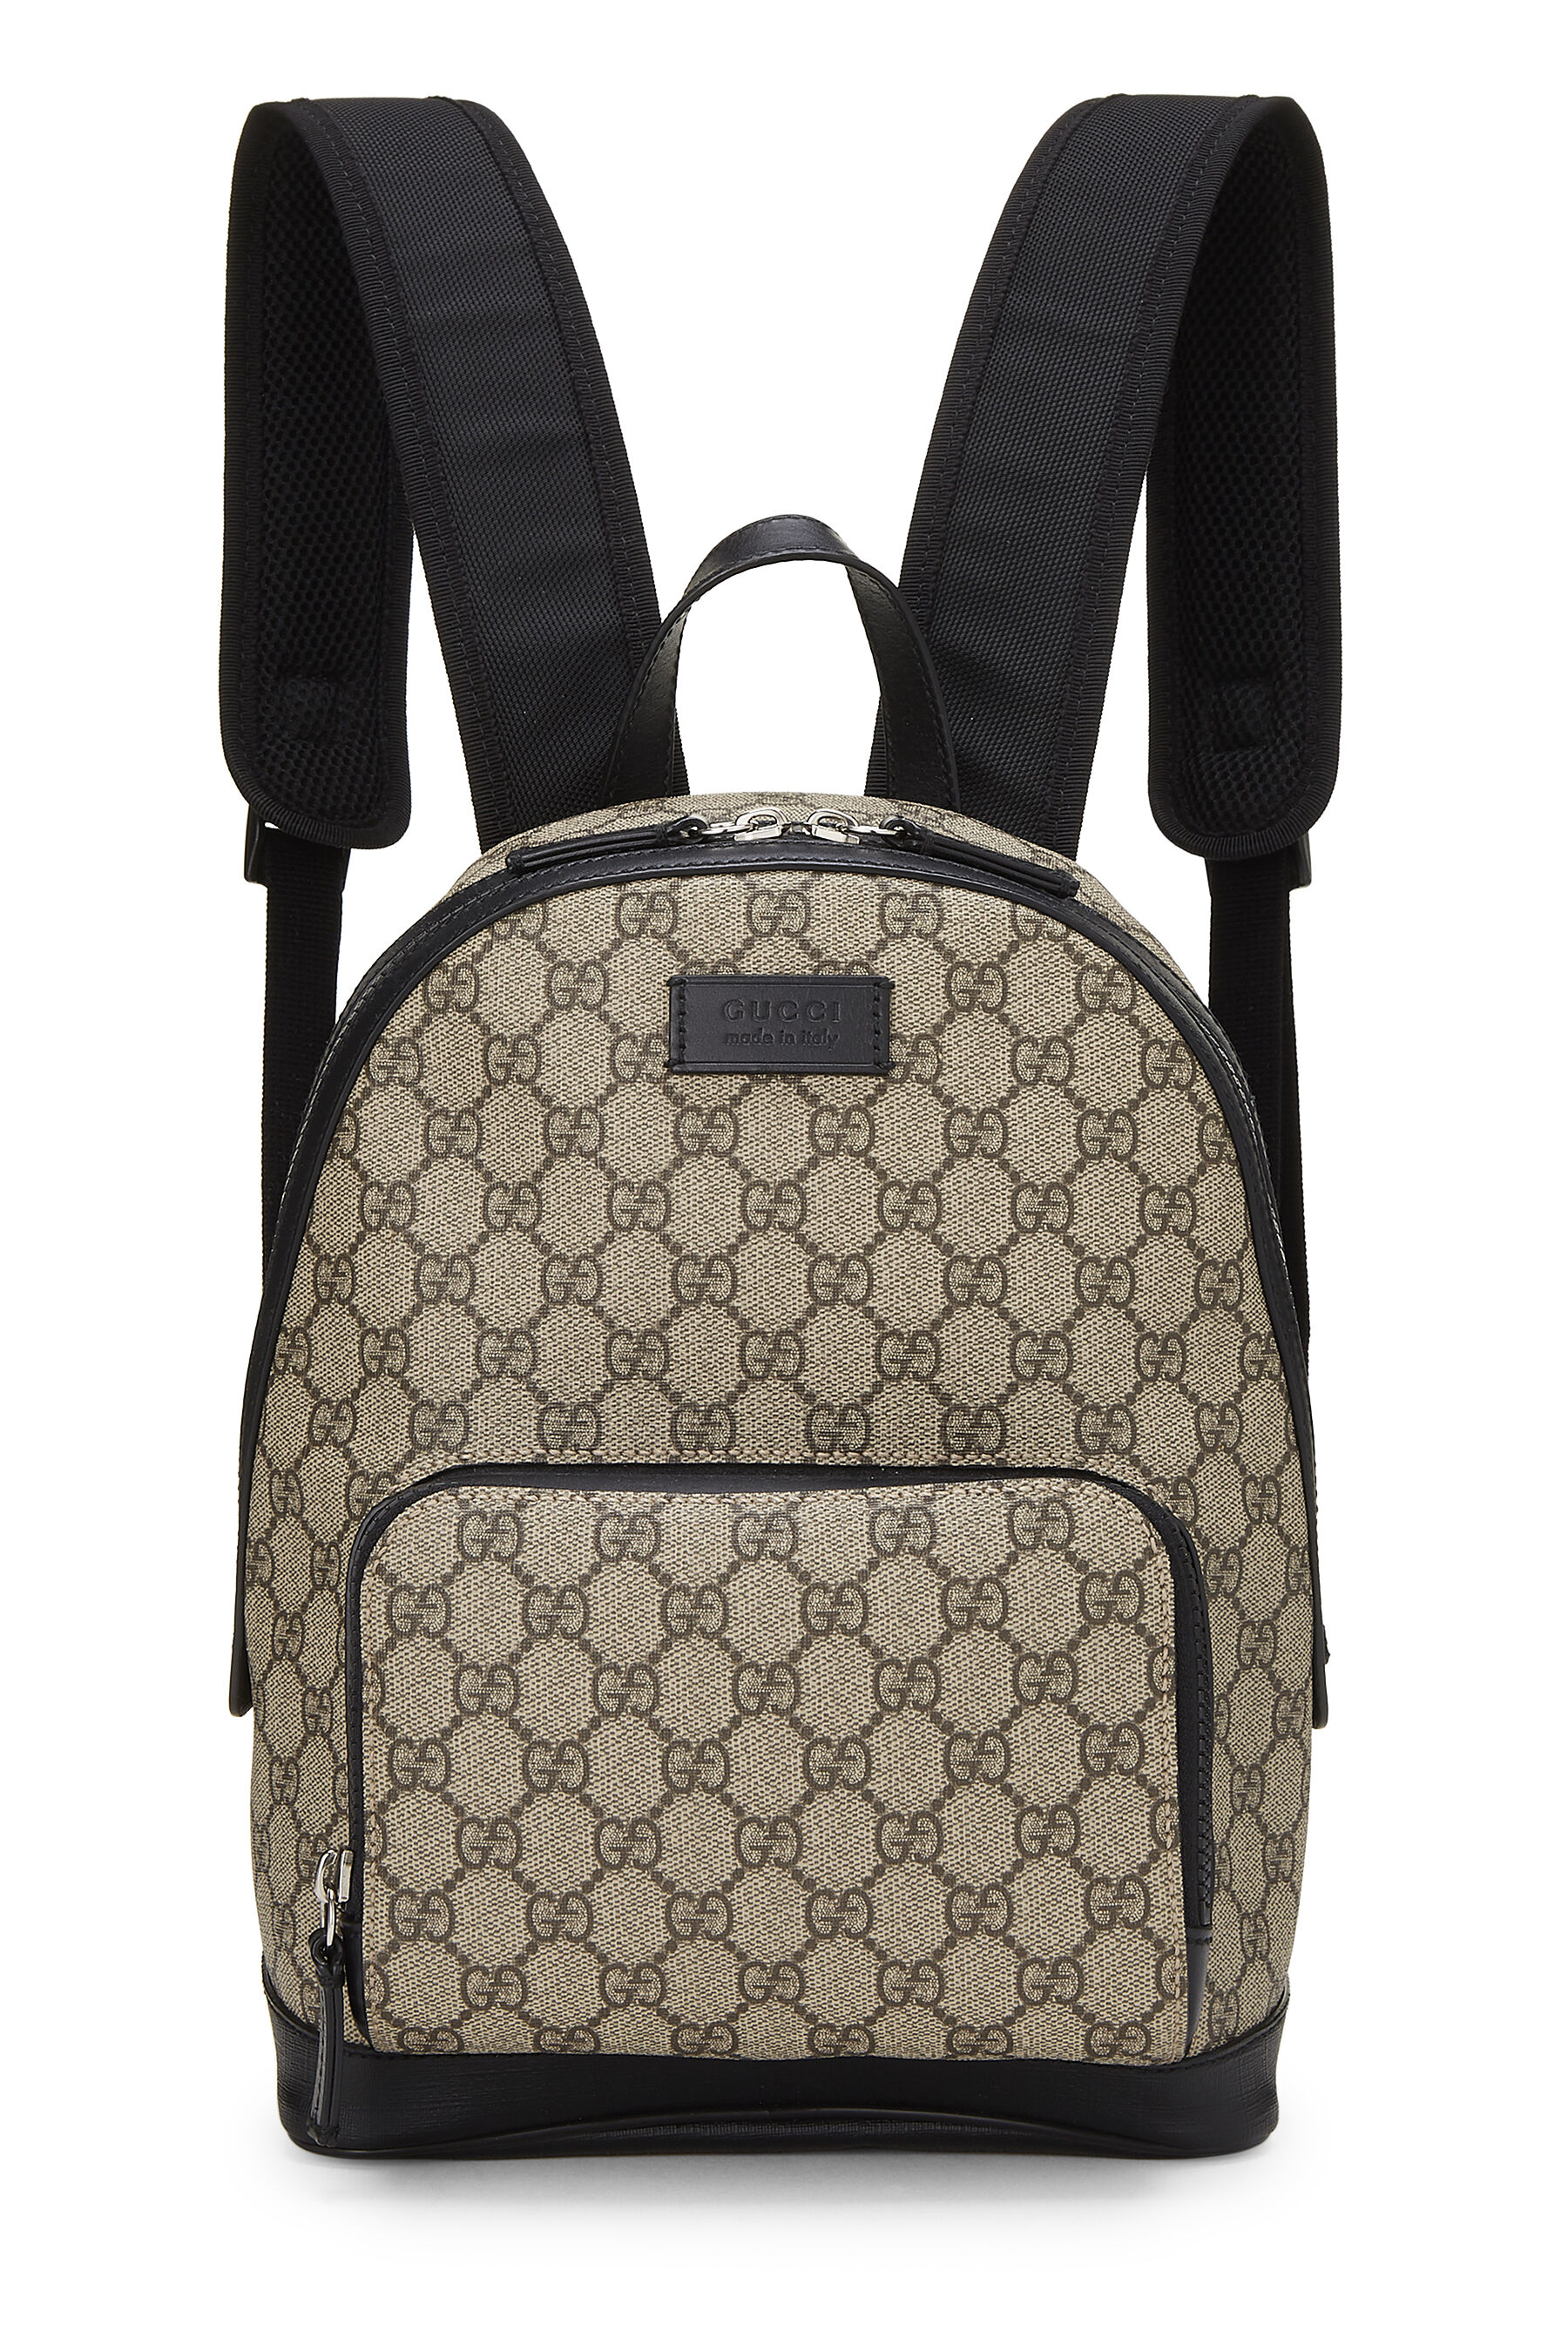 Gucci Black Original GG Supreme Canvas Eden Backpack Small